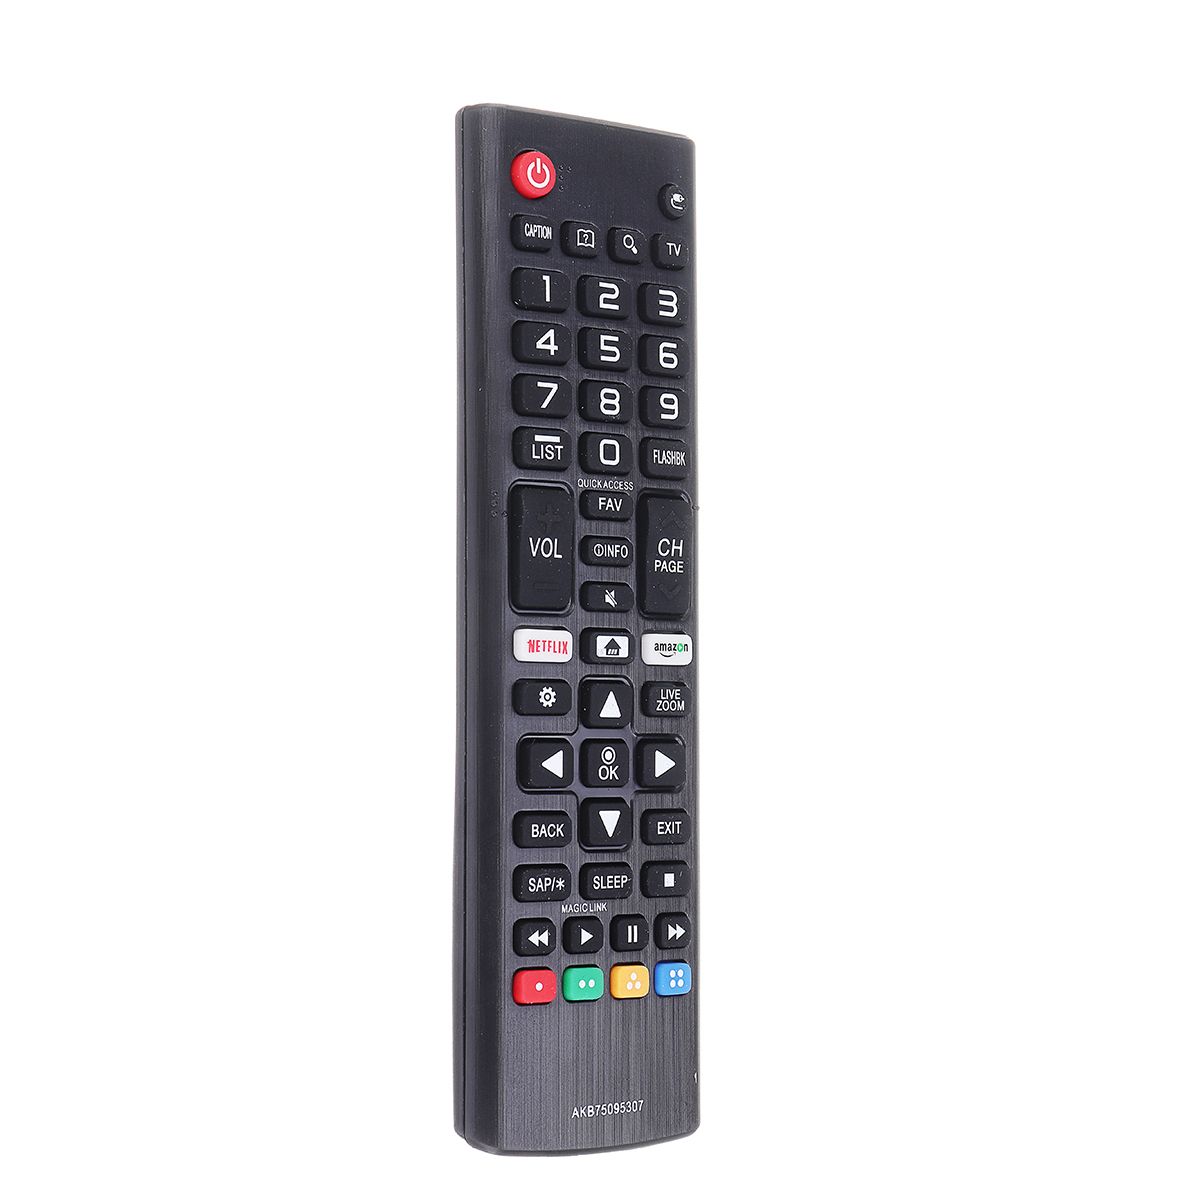 AKB75095307-Replacement-Remote-Control-for-4K-LG-LCD-TV-32LJ550BUA-32LJ550MUB-1635108